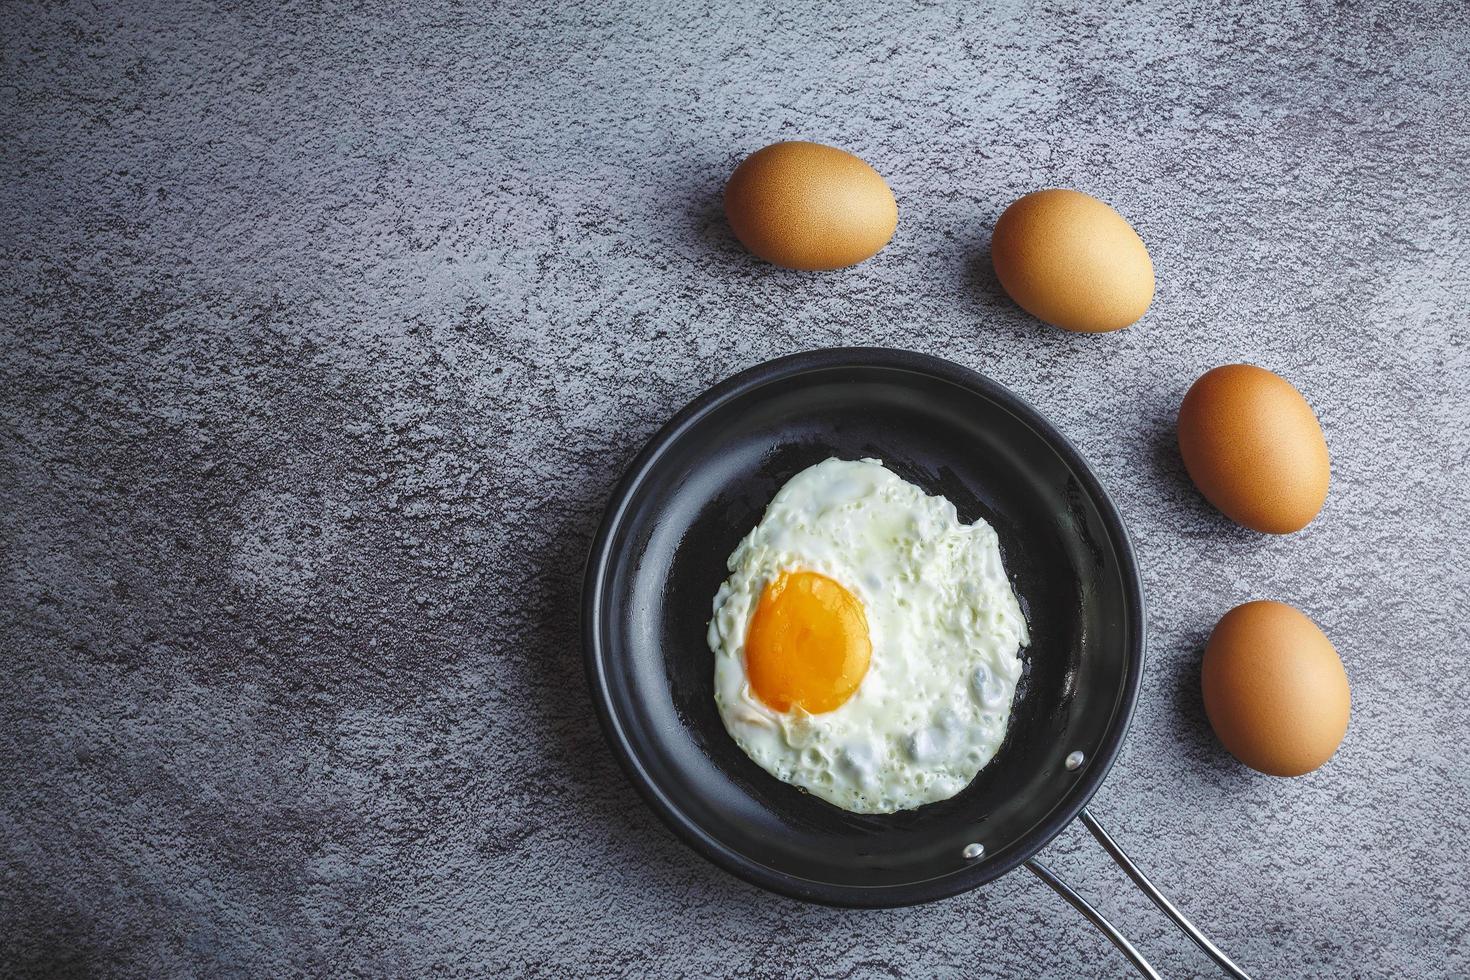 ovos fritos em uma panela e ovos frescos em cima da mesa foto